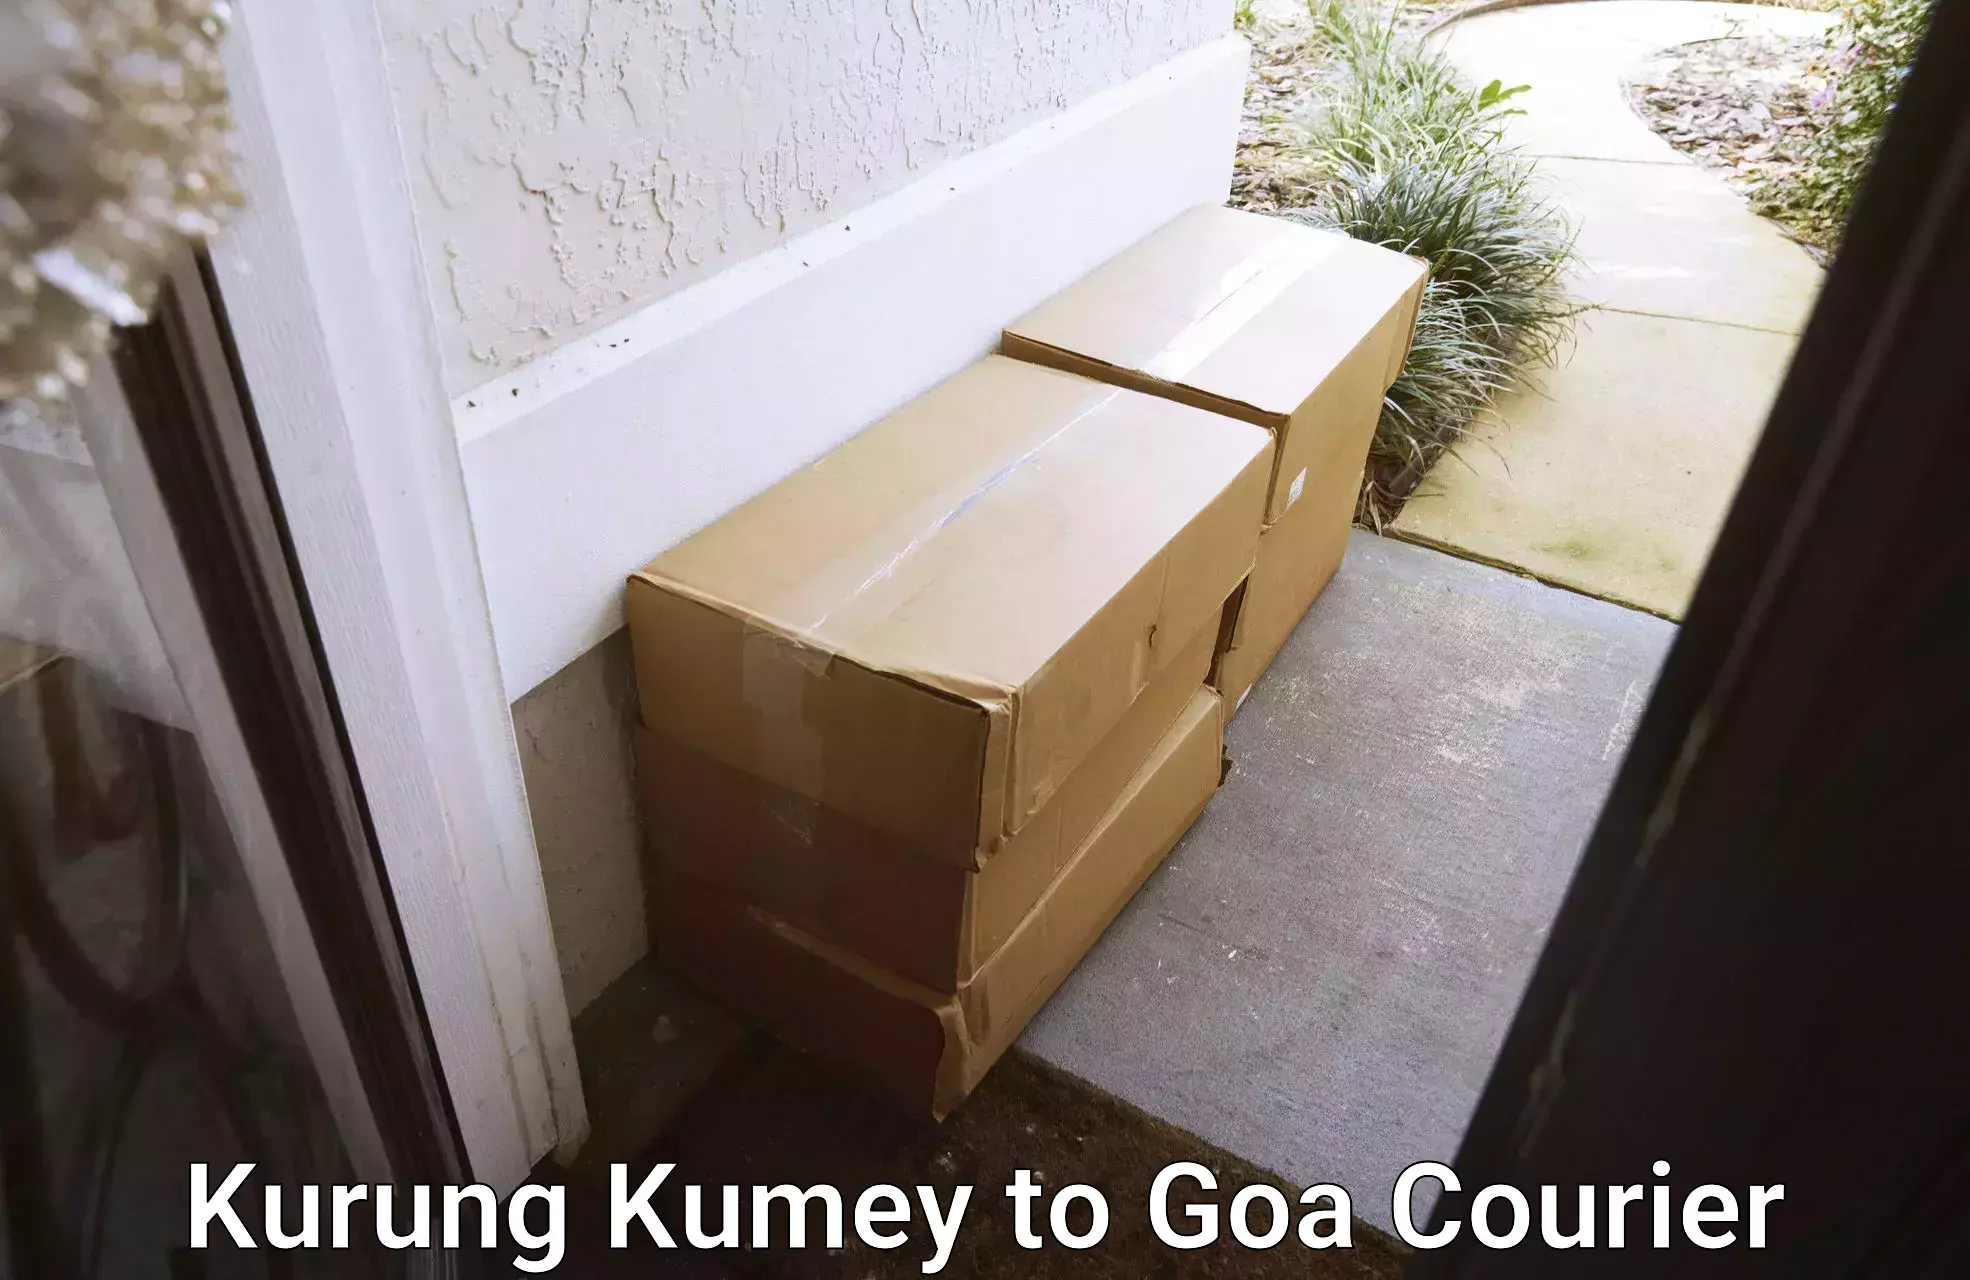 Next-day delivery options Kurung Kumey to Vasco da Gama